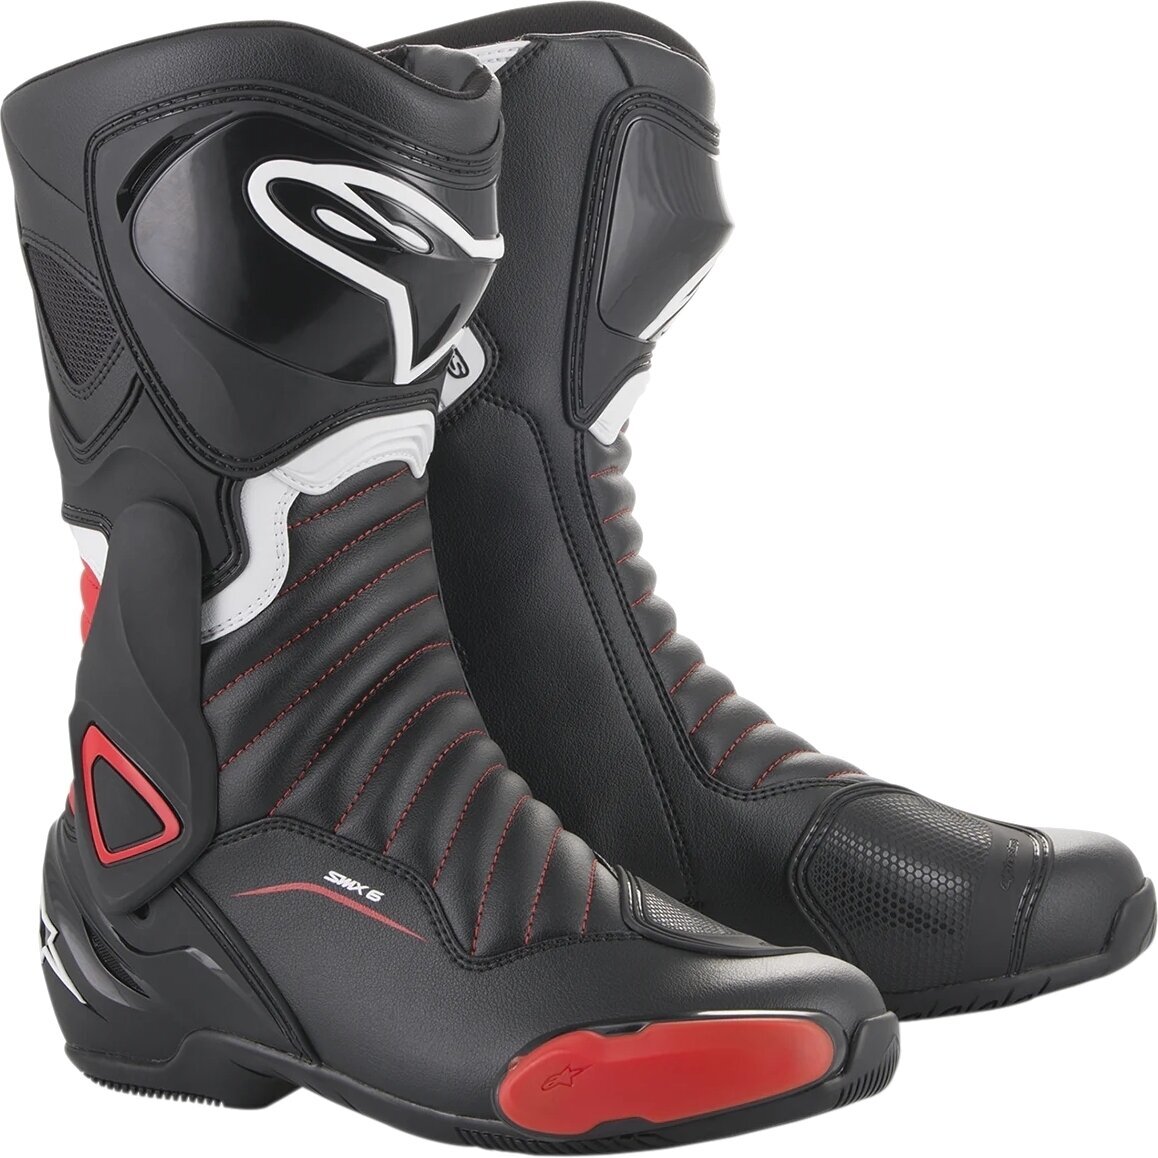 Boty Alpinestars SMX-6 V2 Boots Black/Gray/Red Fluo 41 Boty